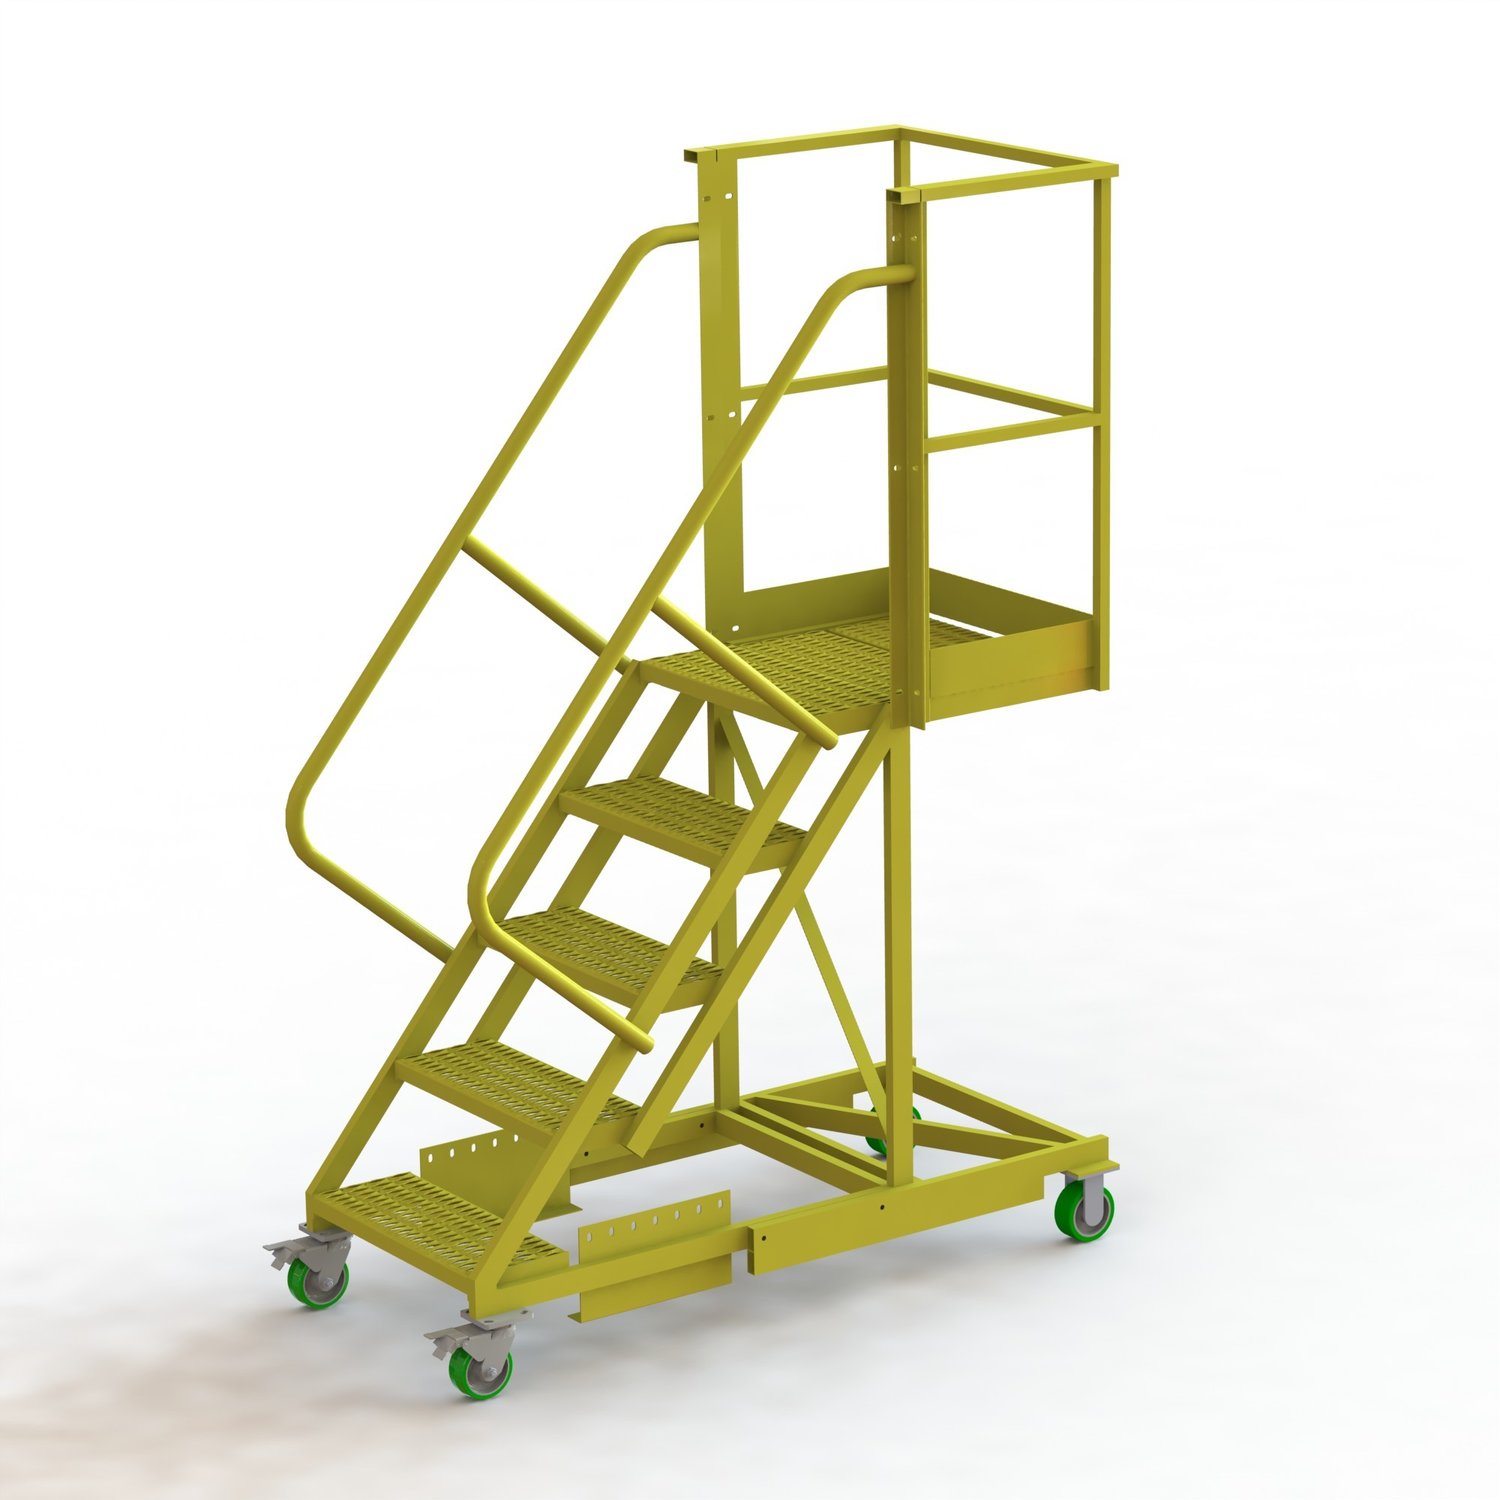 U Design Supported Cantilever Ladder | Platforms and Ladders